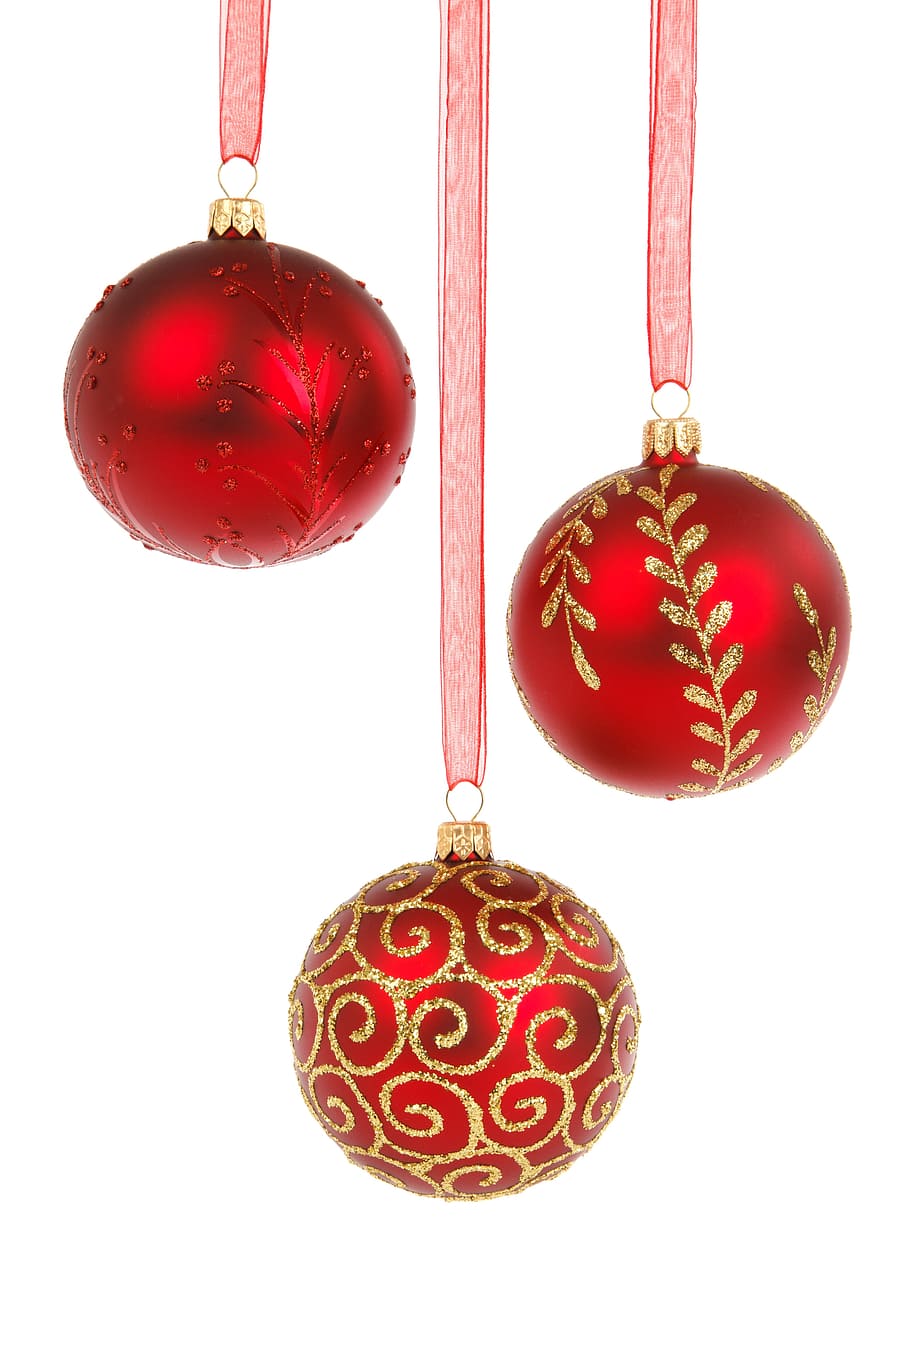 tiga pernak-pernik merah, bola, perhiasan, perayaan, natal, desember, dekorasi, dekoratif, kaca, gantung